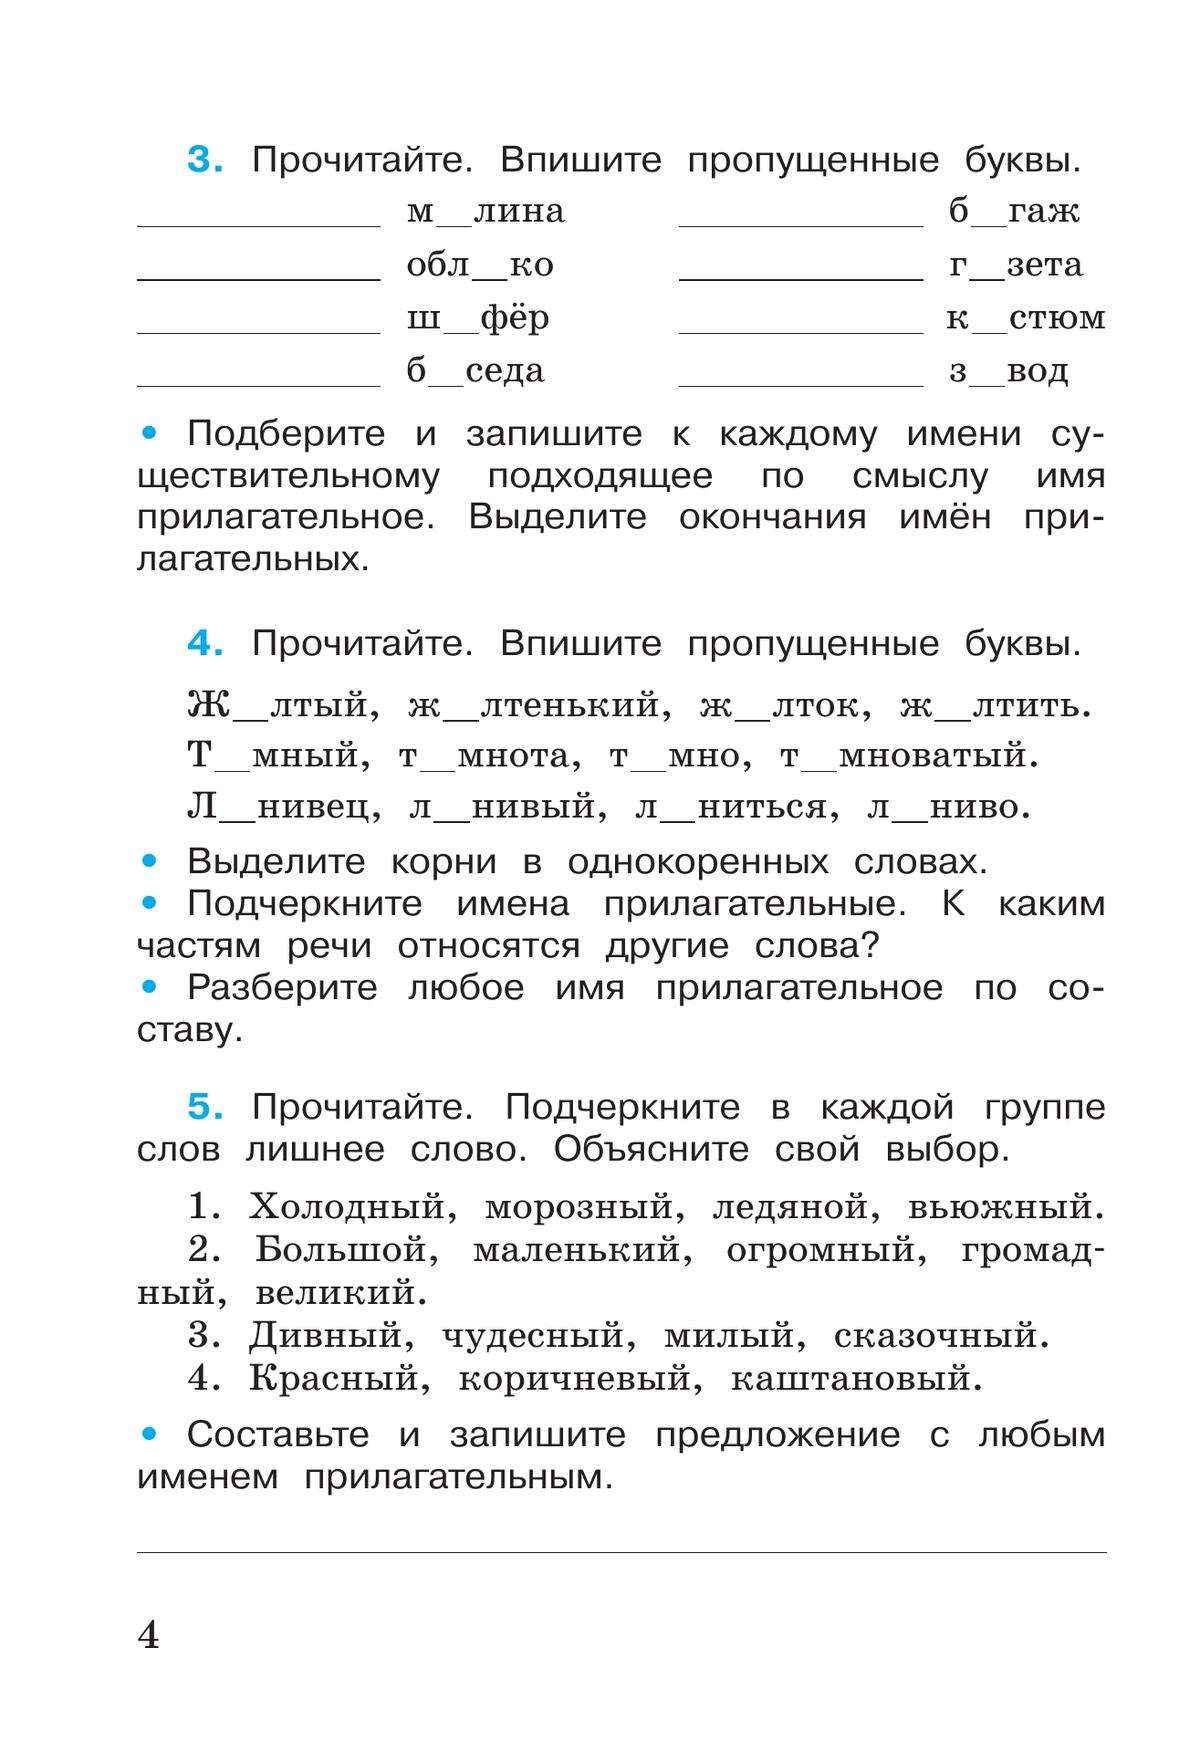 Русский язык. Рабочая тетрадь. 4 класс. В 2-х ч. Ч. 2 5